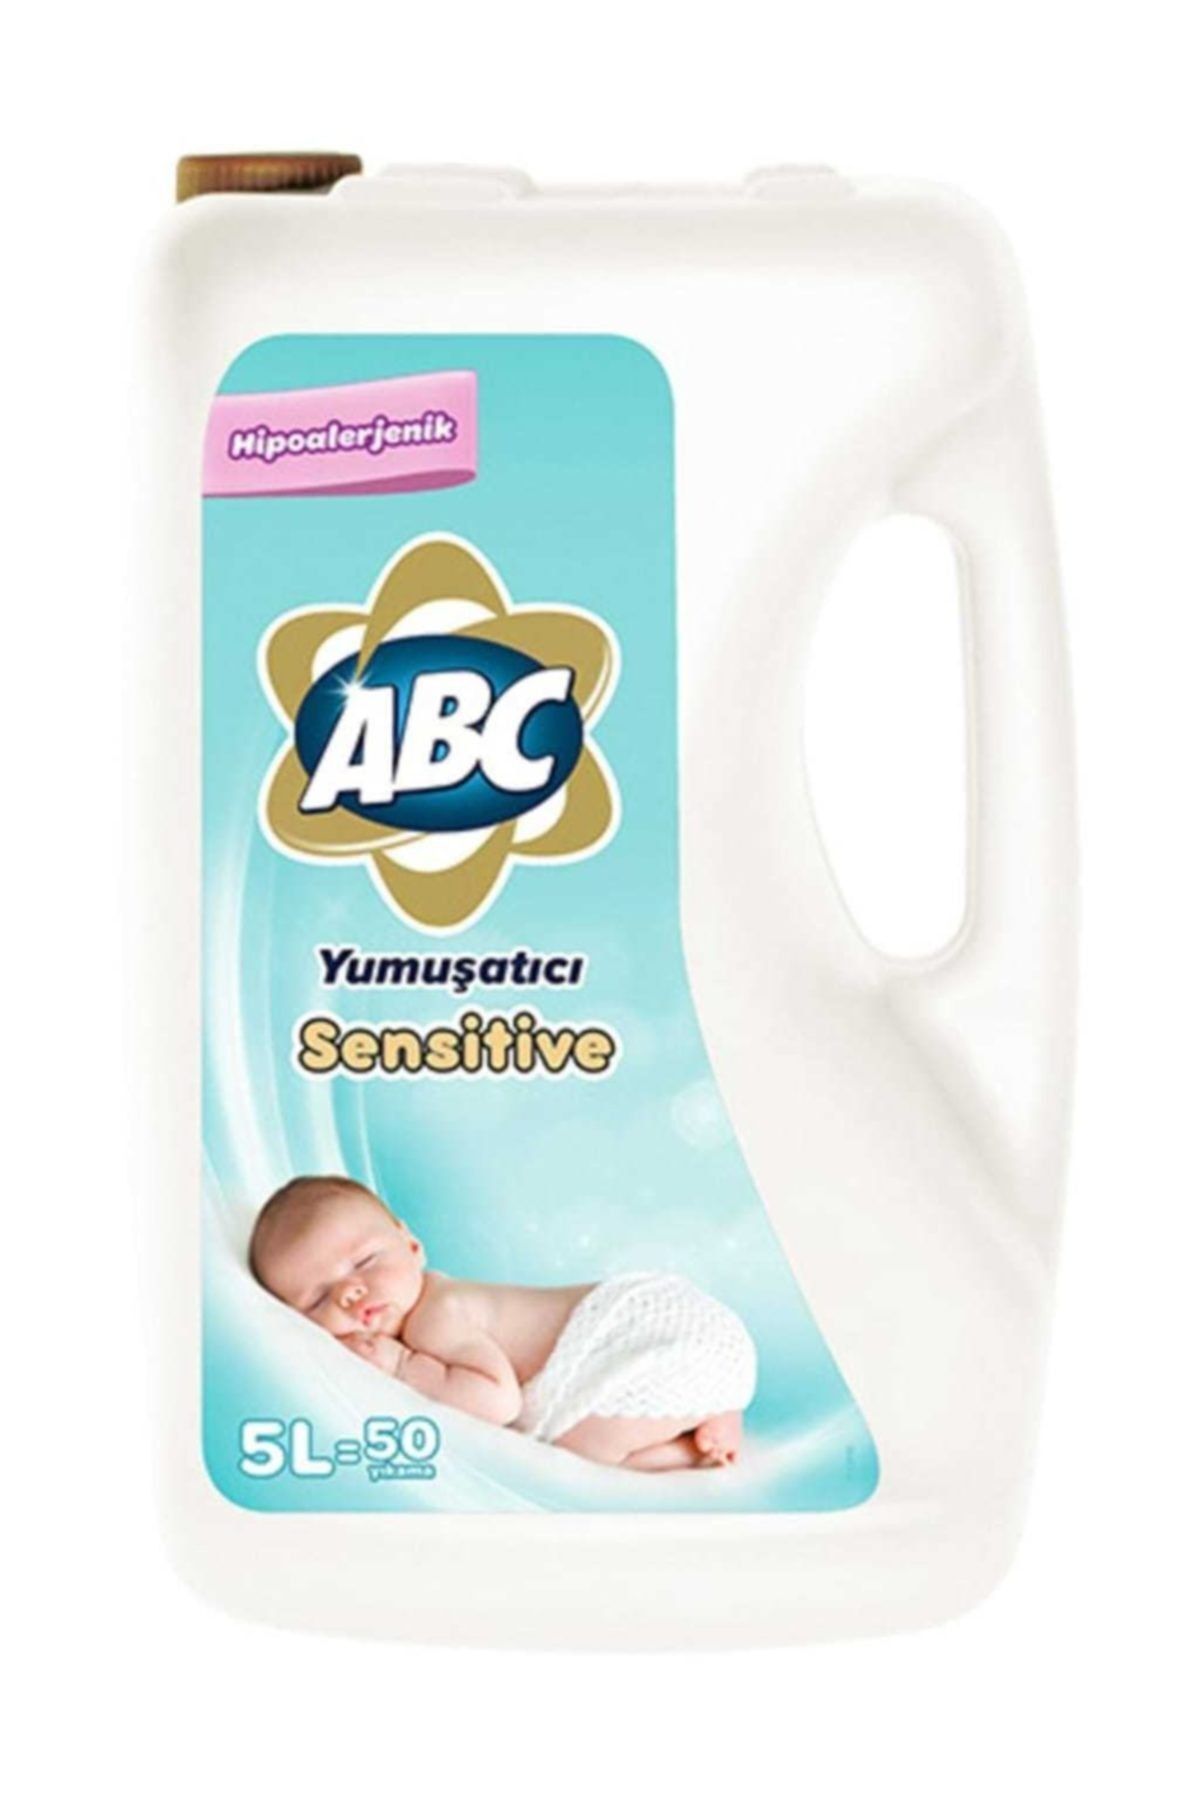 ABC Çamaşır Yumuşatıcı Sensitive 5 lt